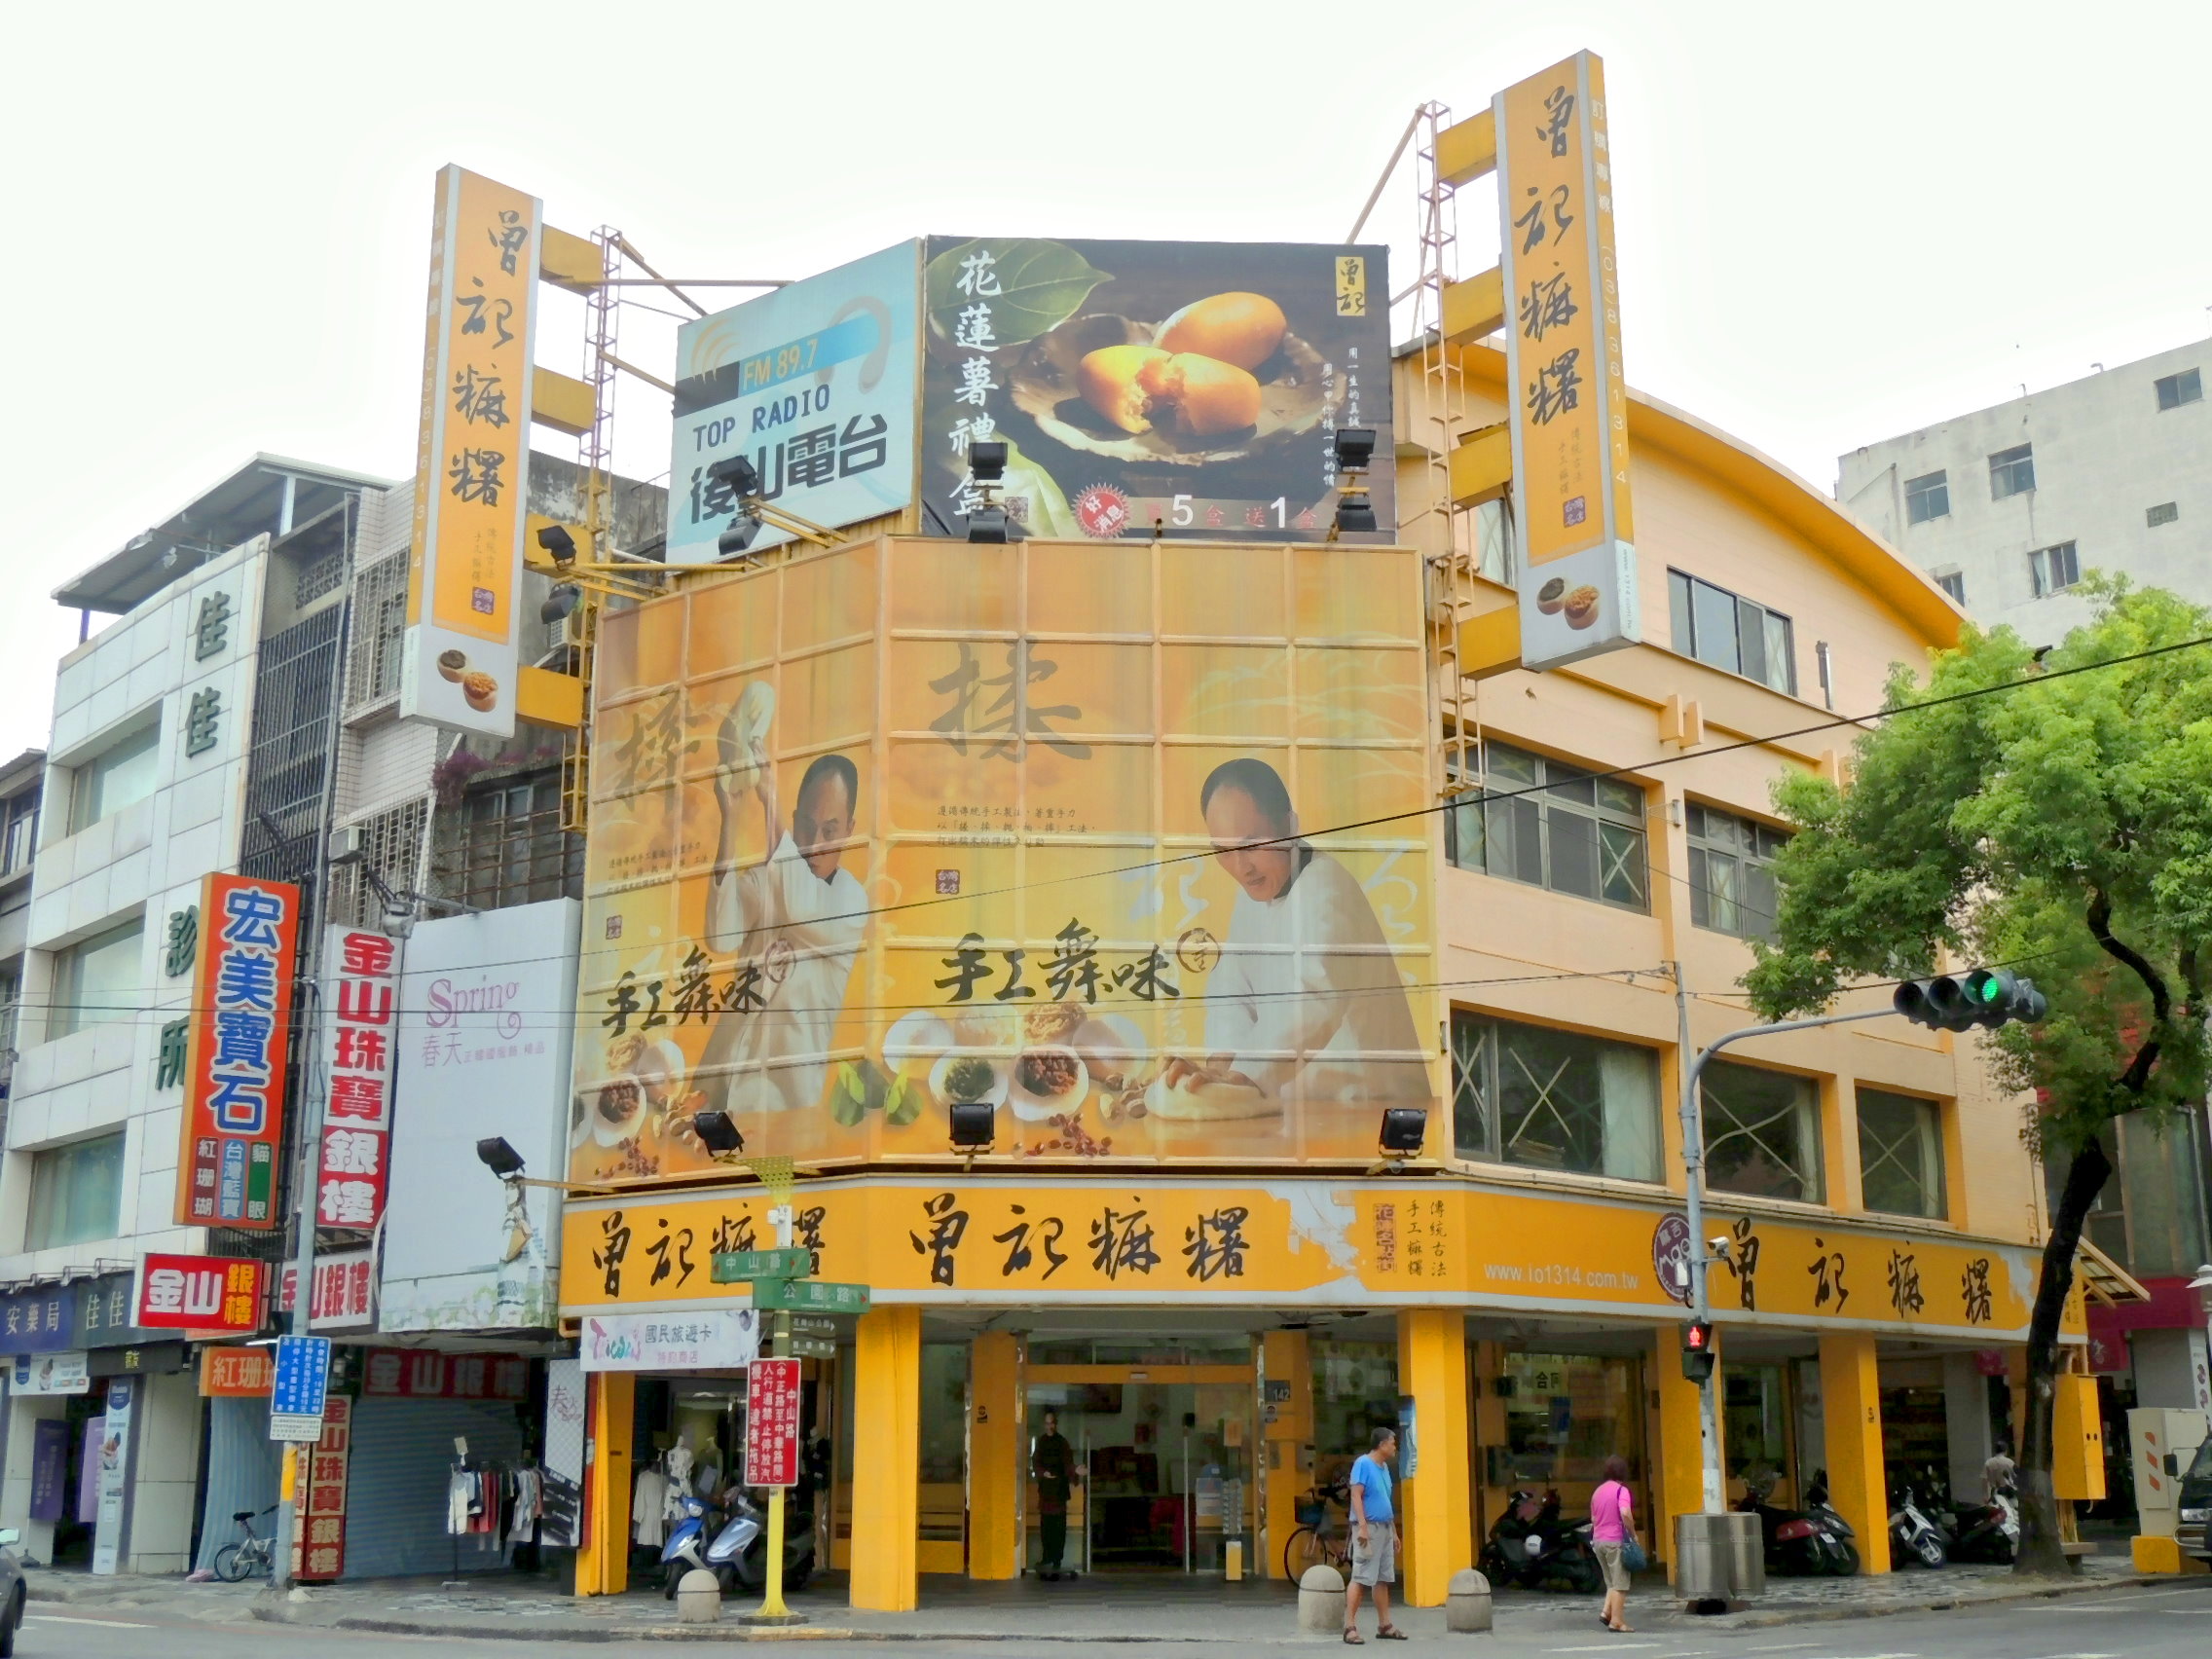 Zhongshan store,tzen,花蓮特產,曾記麻糬中山門市,花蓮市中山路